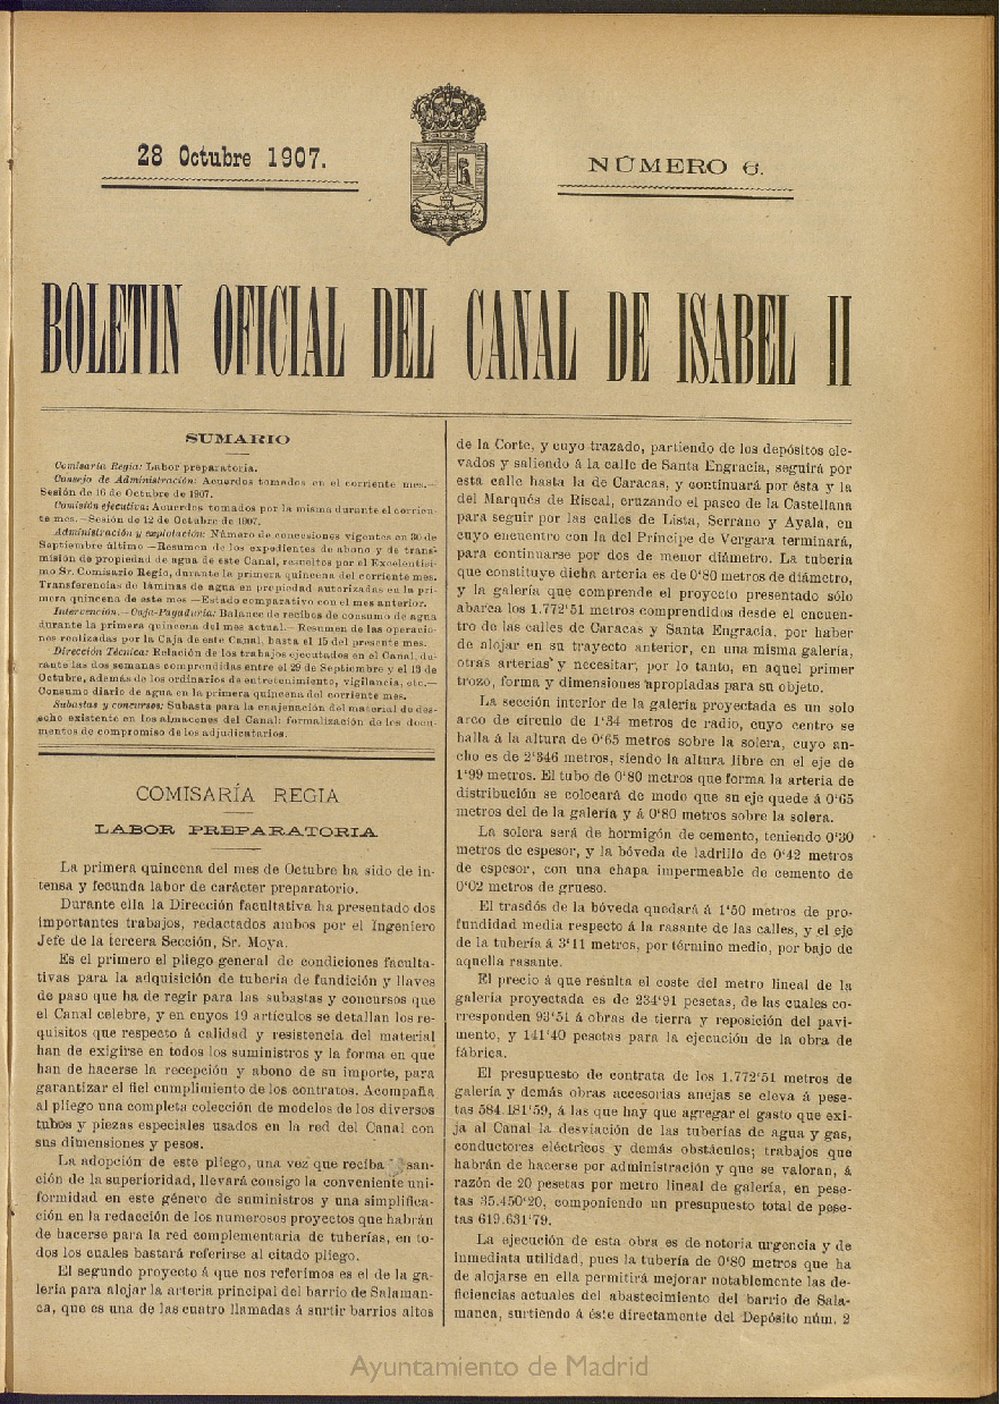 Boletín Oficial del Canal de Isabel II del 28 de octubre de 1907, nº 6